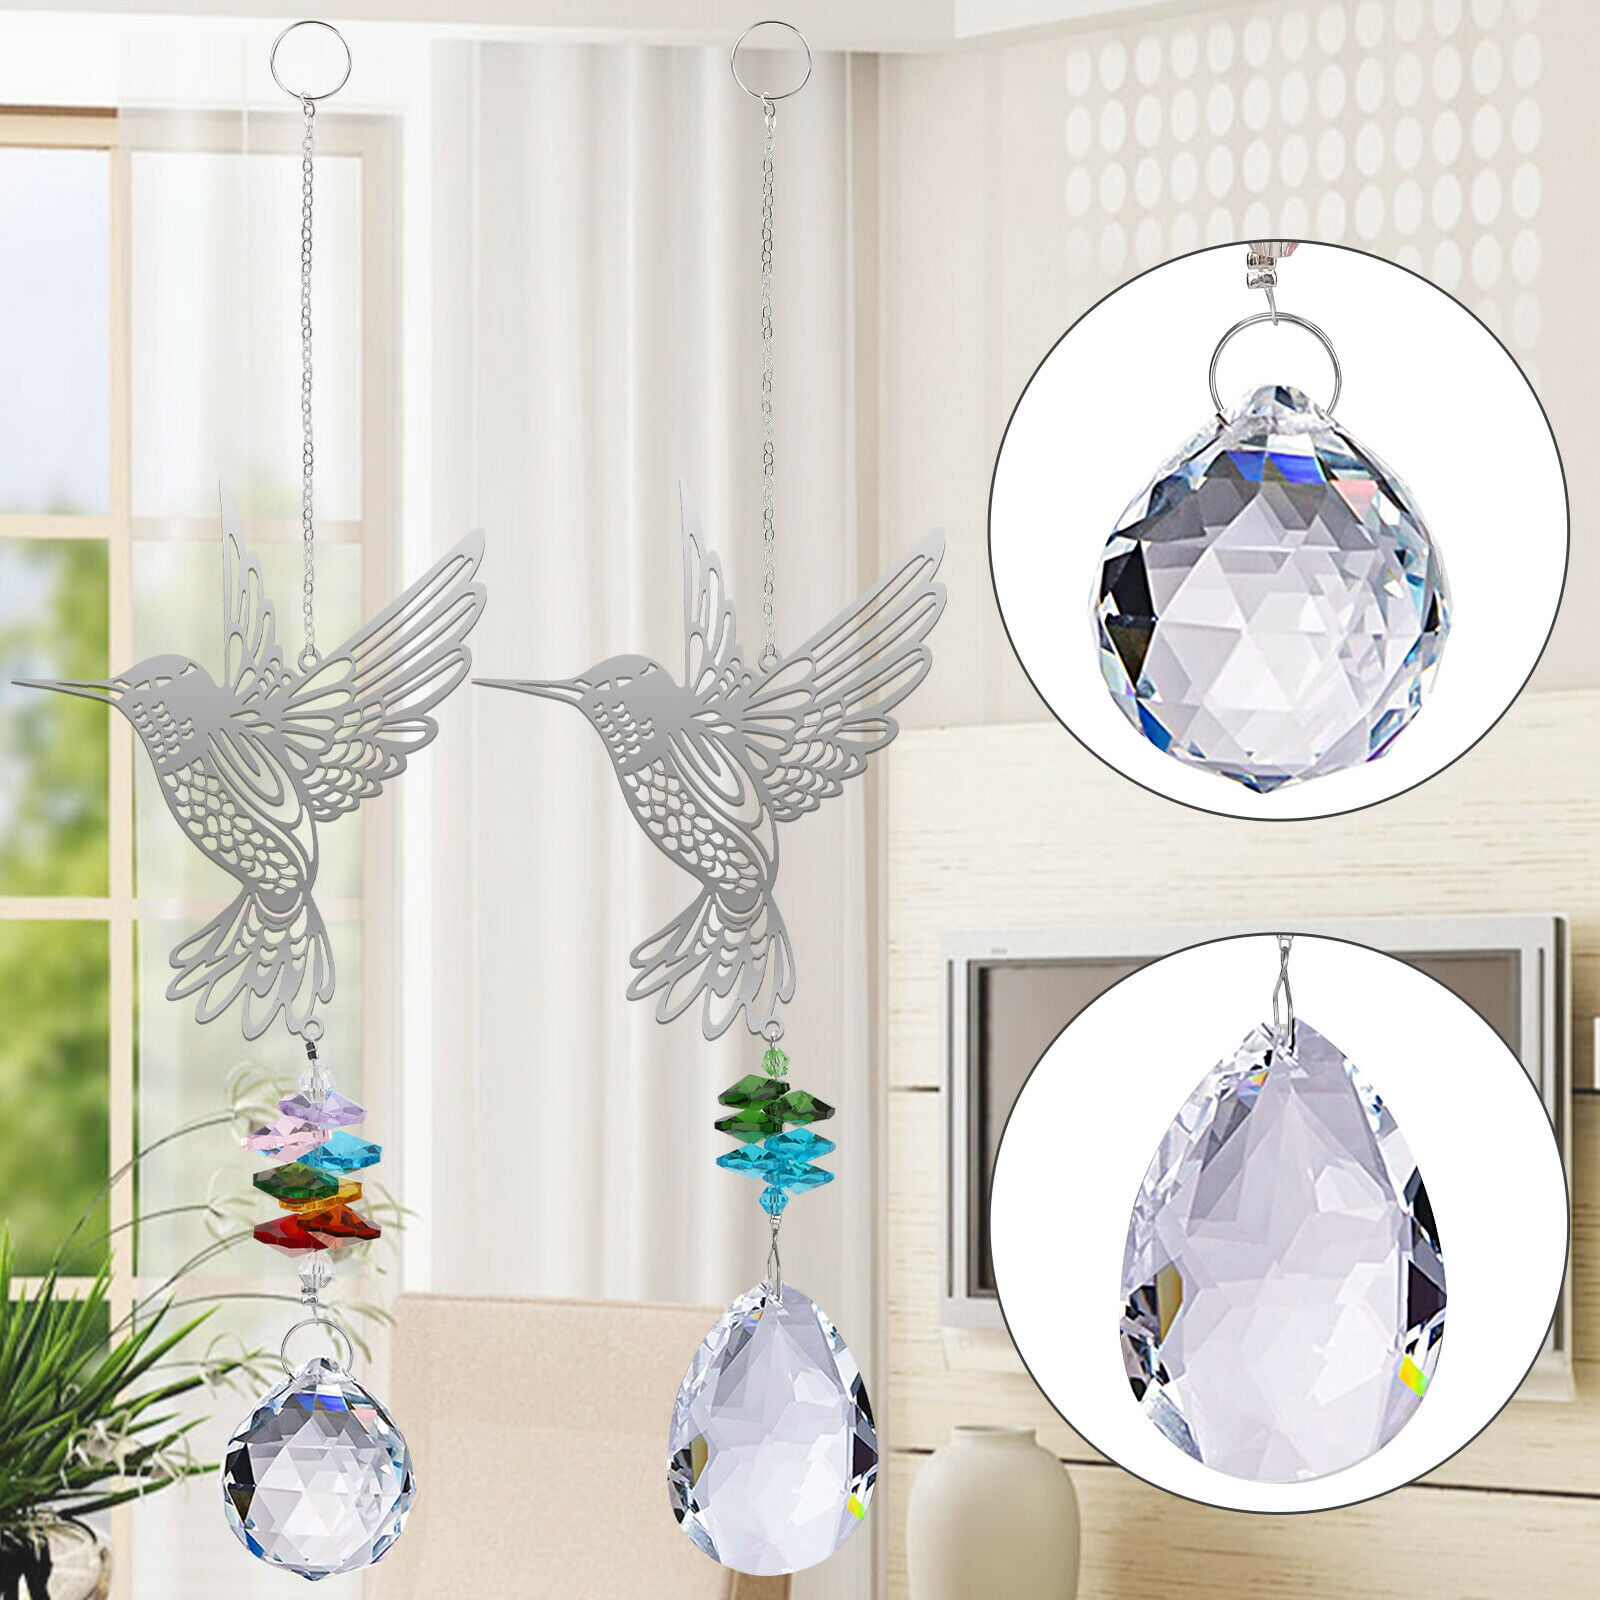 Details about   2PCS Suncatcher Crystal Hummingbird Pendant Prisms Hanging Ornament Garden Decor 